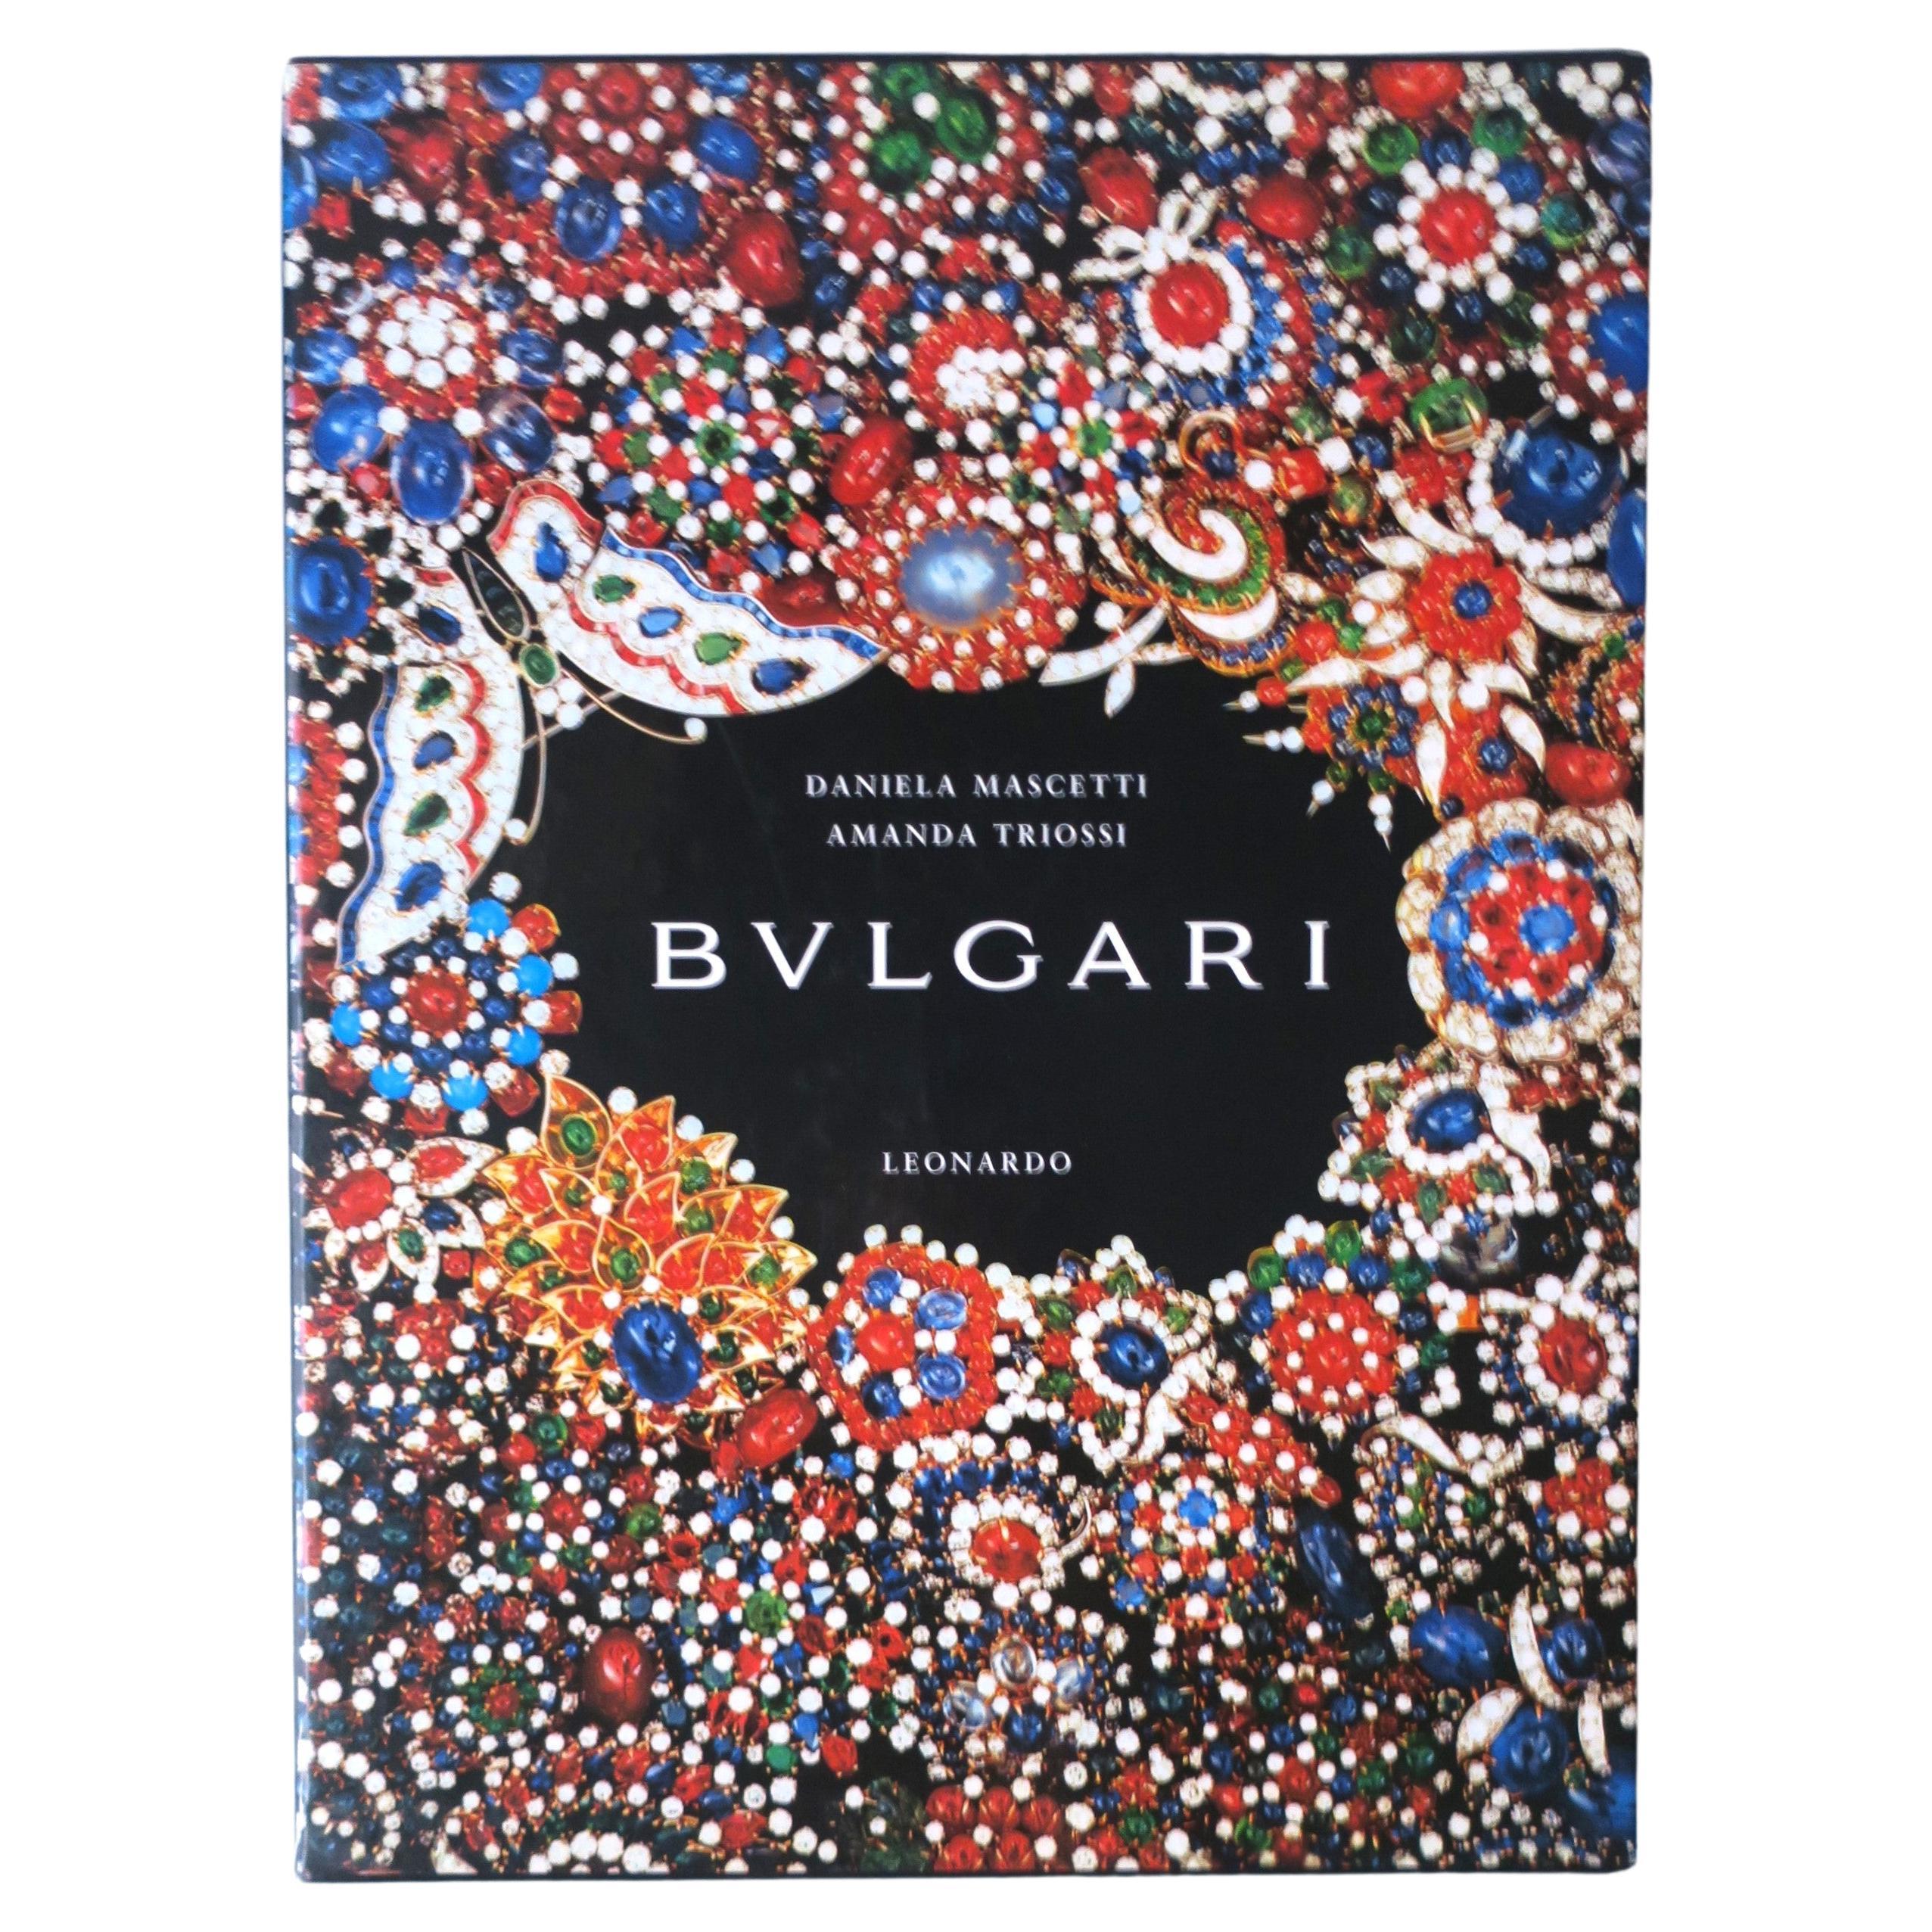 Bvlgari Bulgari High Jewelry Luxury Coffee Table Book, circa 1990s